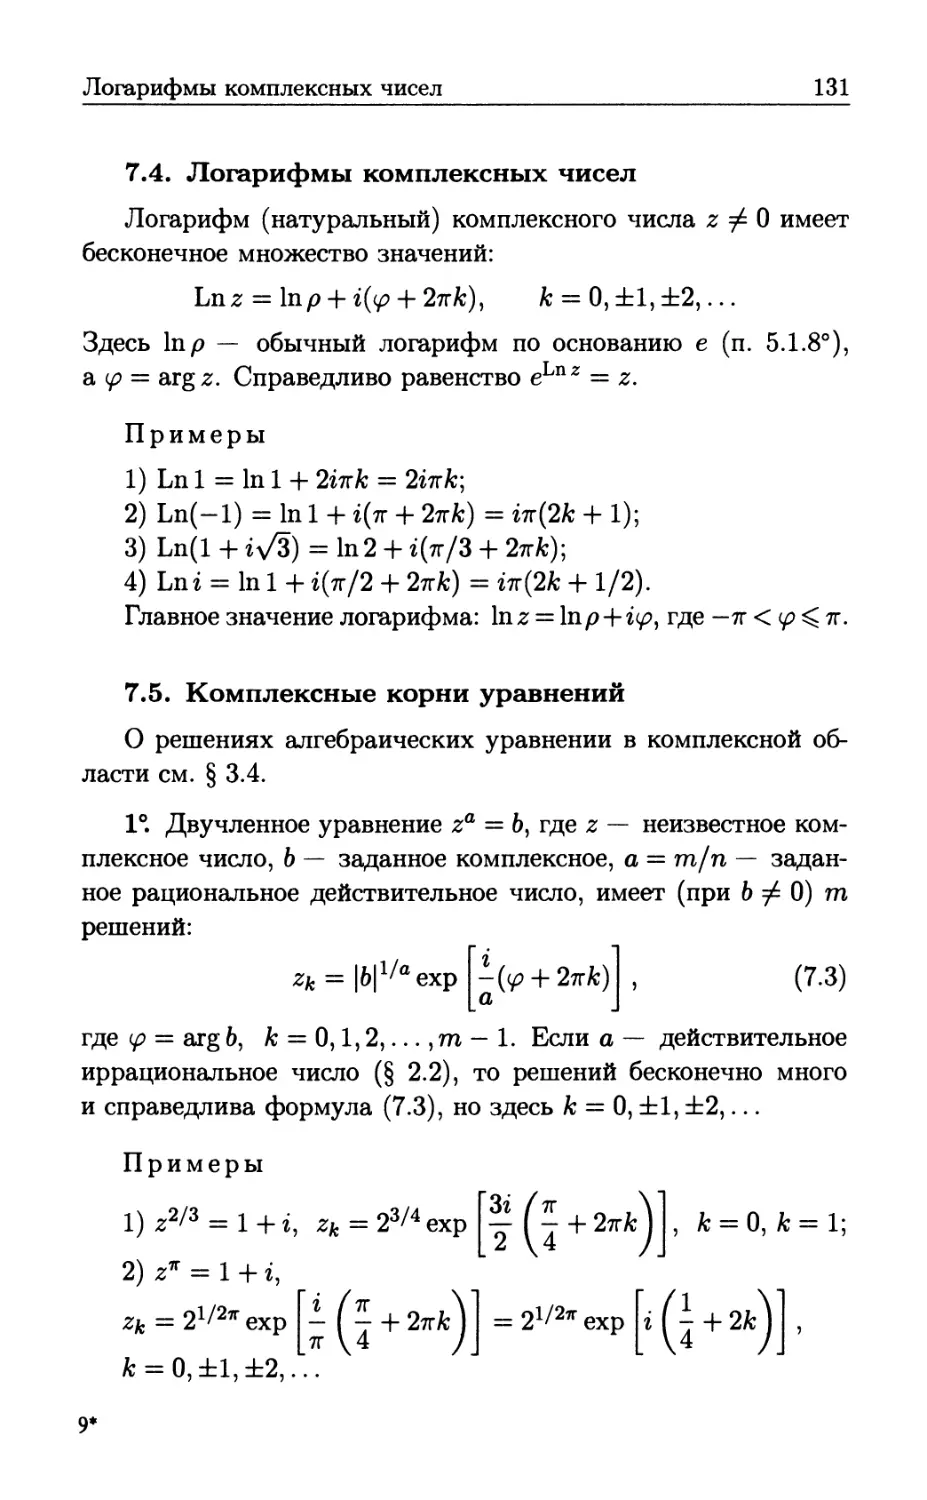 7.4. Логарифмы комплексных чисел
7.5. Комплексные корни уравнений